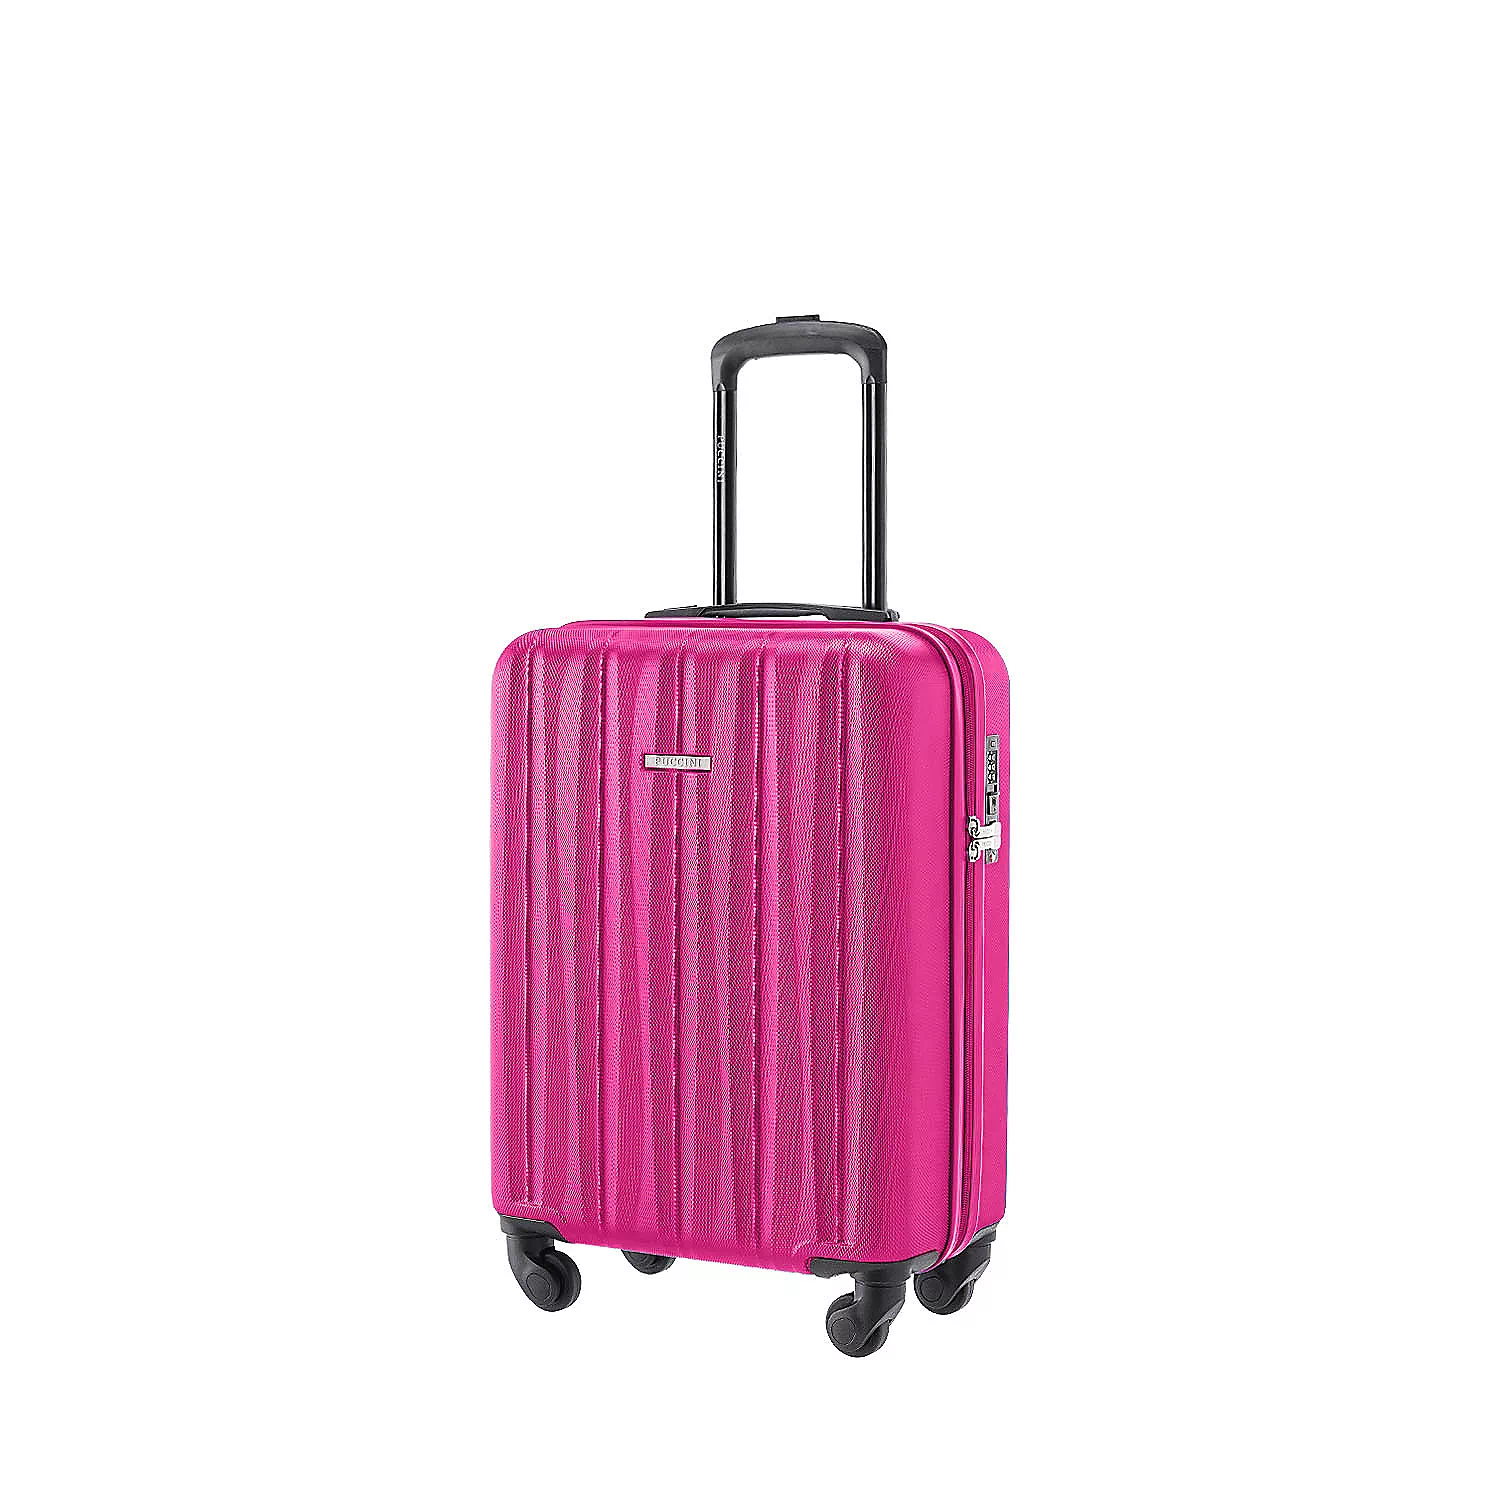 Kabinowa walizka Puccini Bali ze żłobieniami, różowa, 55 x 38 x 20 cm